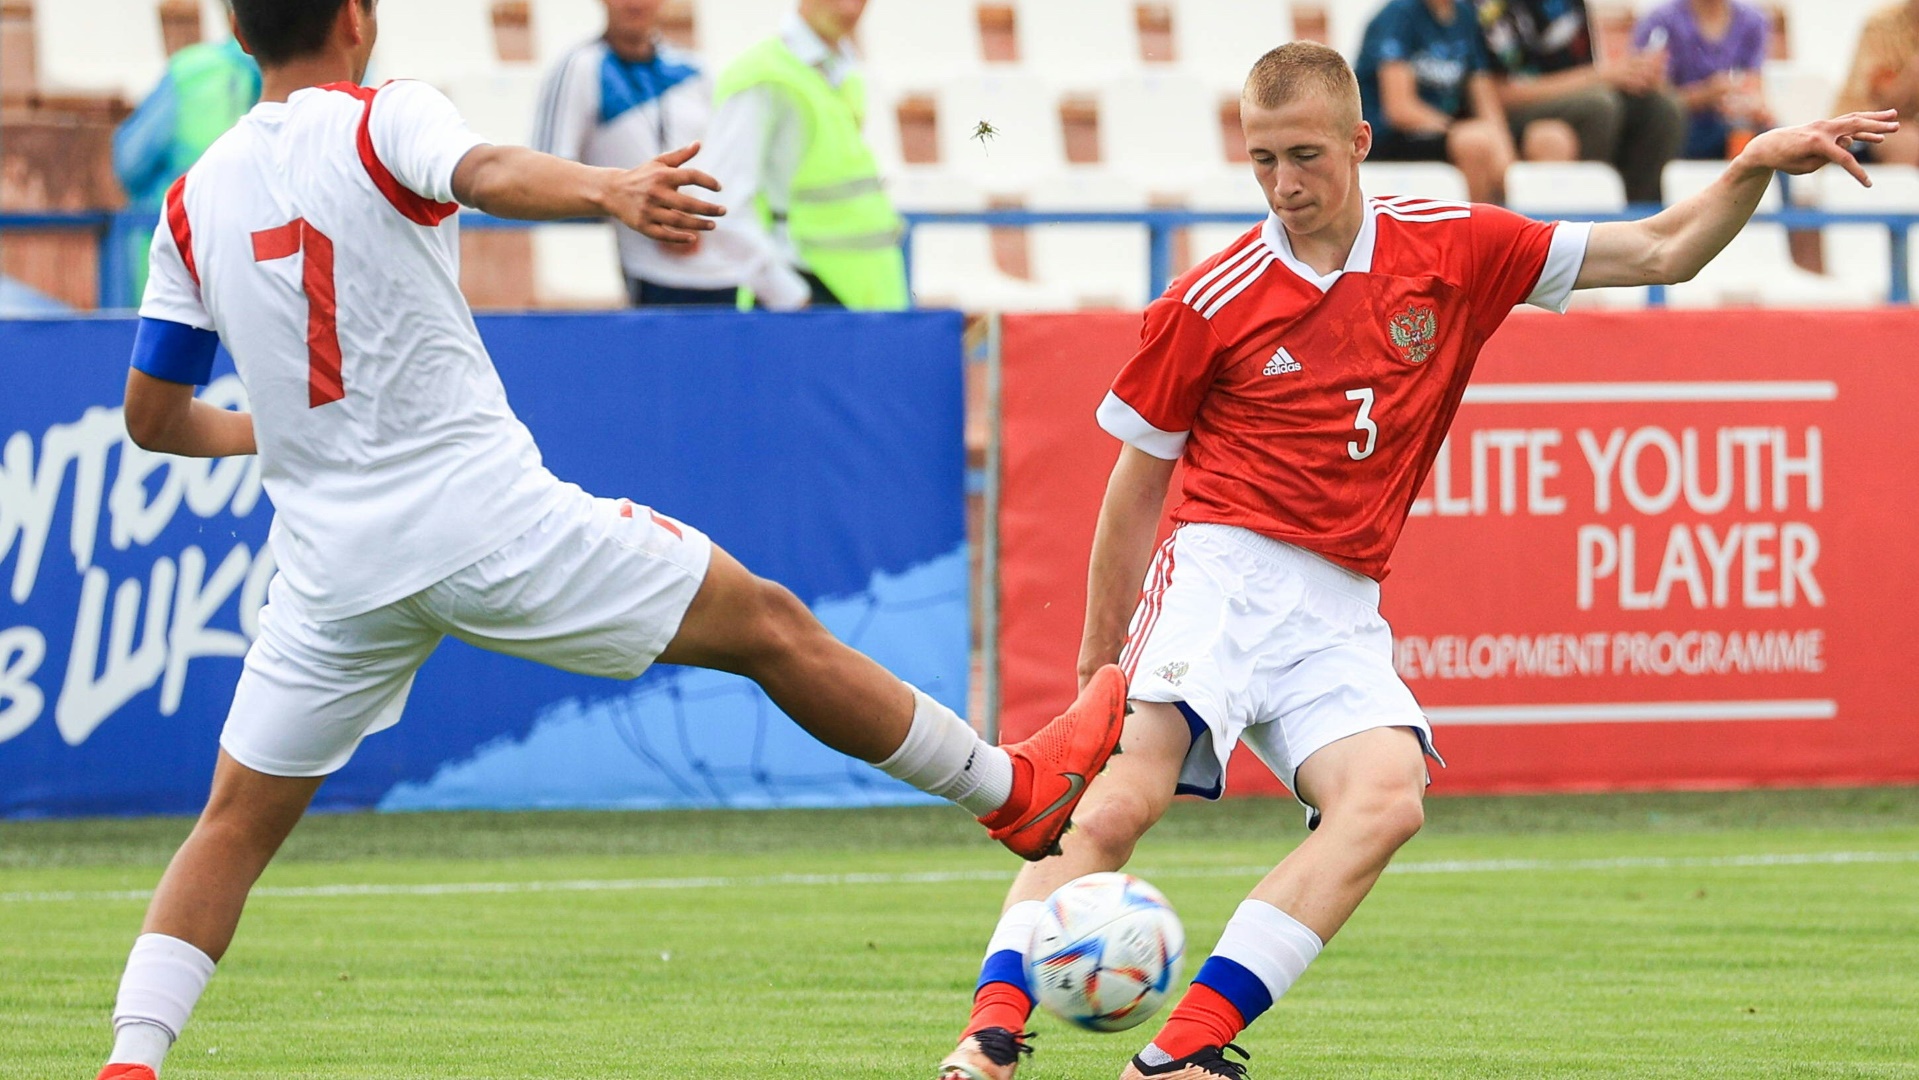 Russische Jugendteams dürfen wieder an UEFA-Wettbewerben teilnehmen